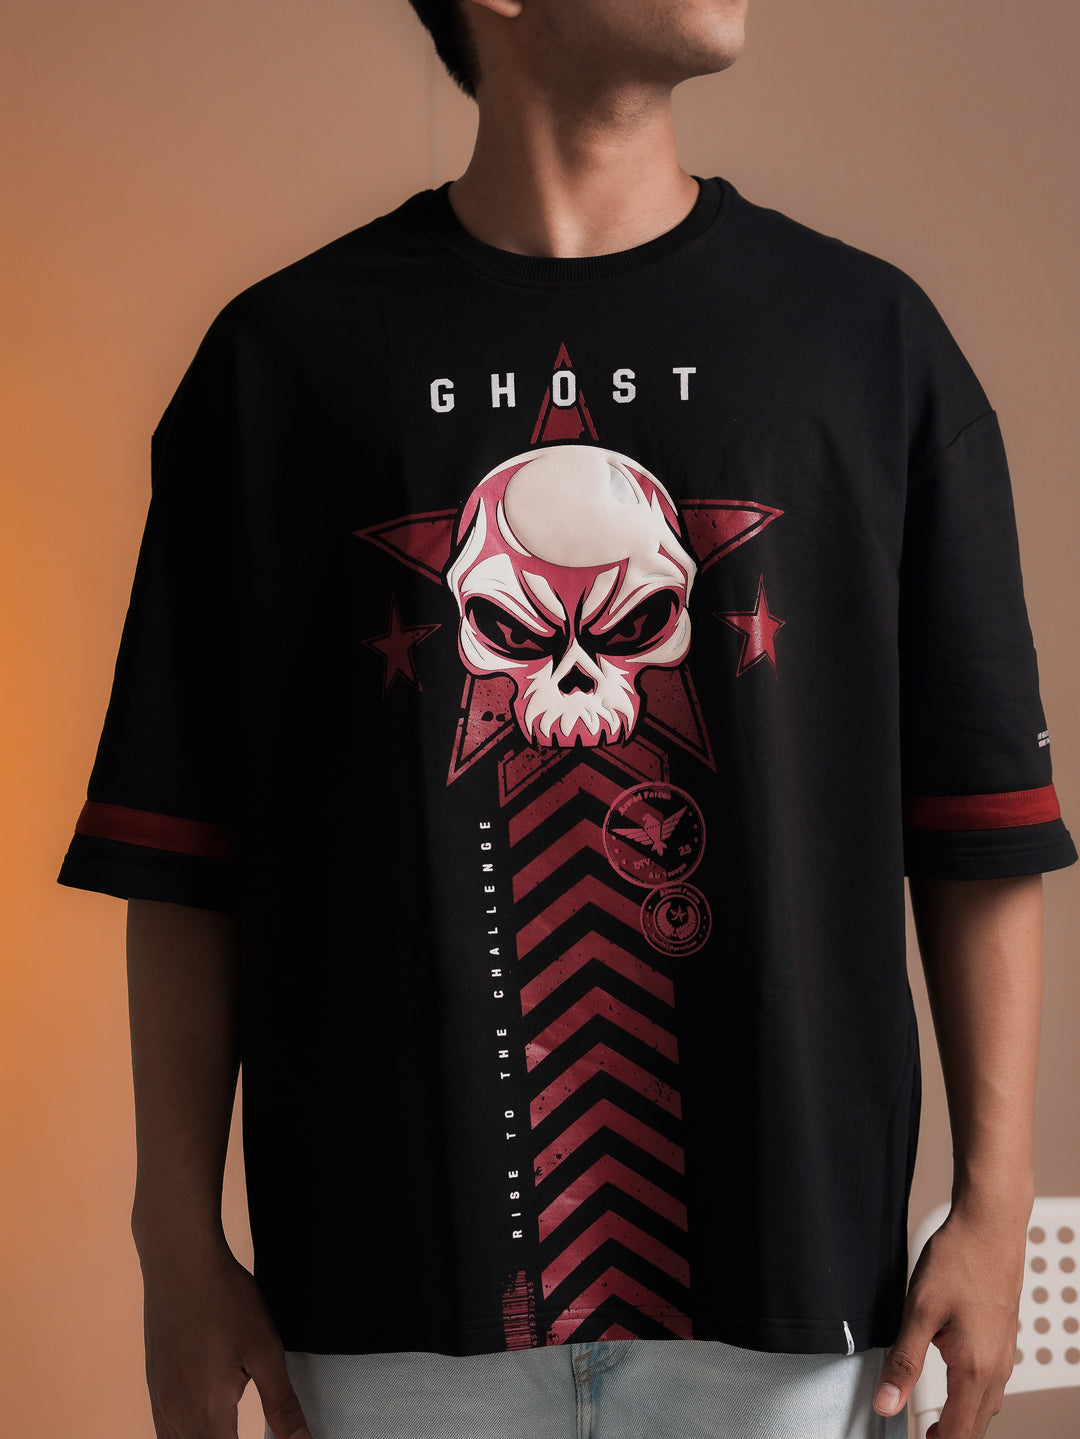 Ghost - Oversized T-shirt Men